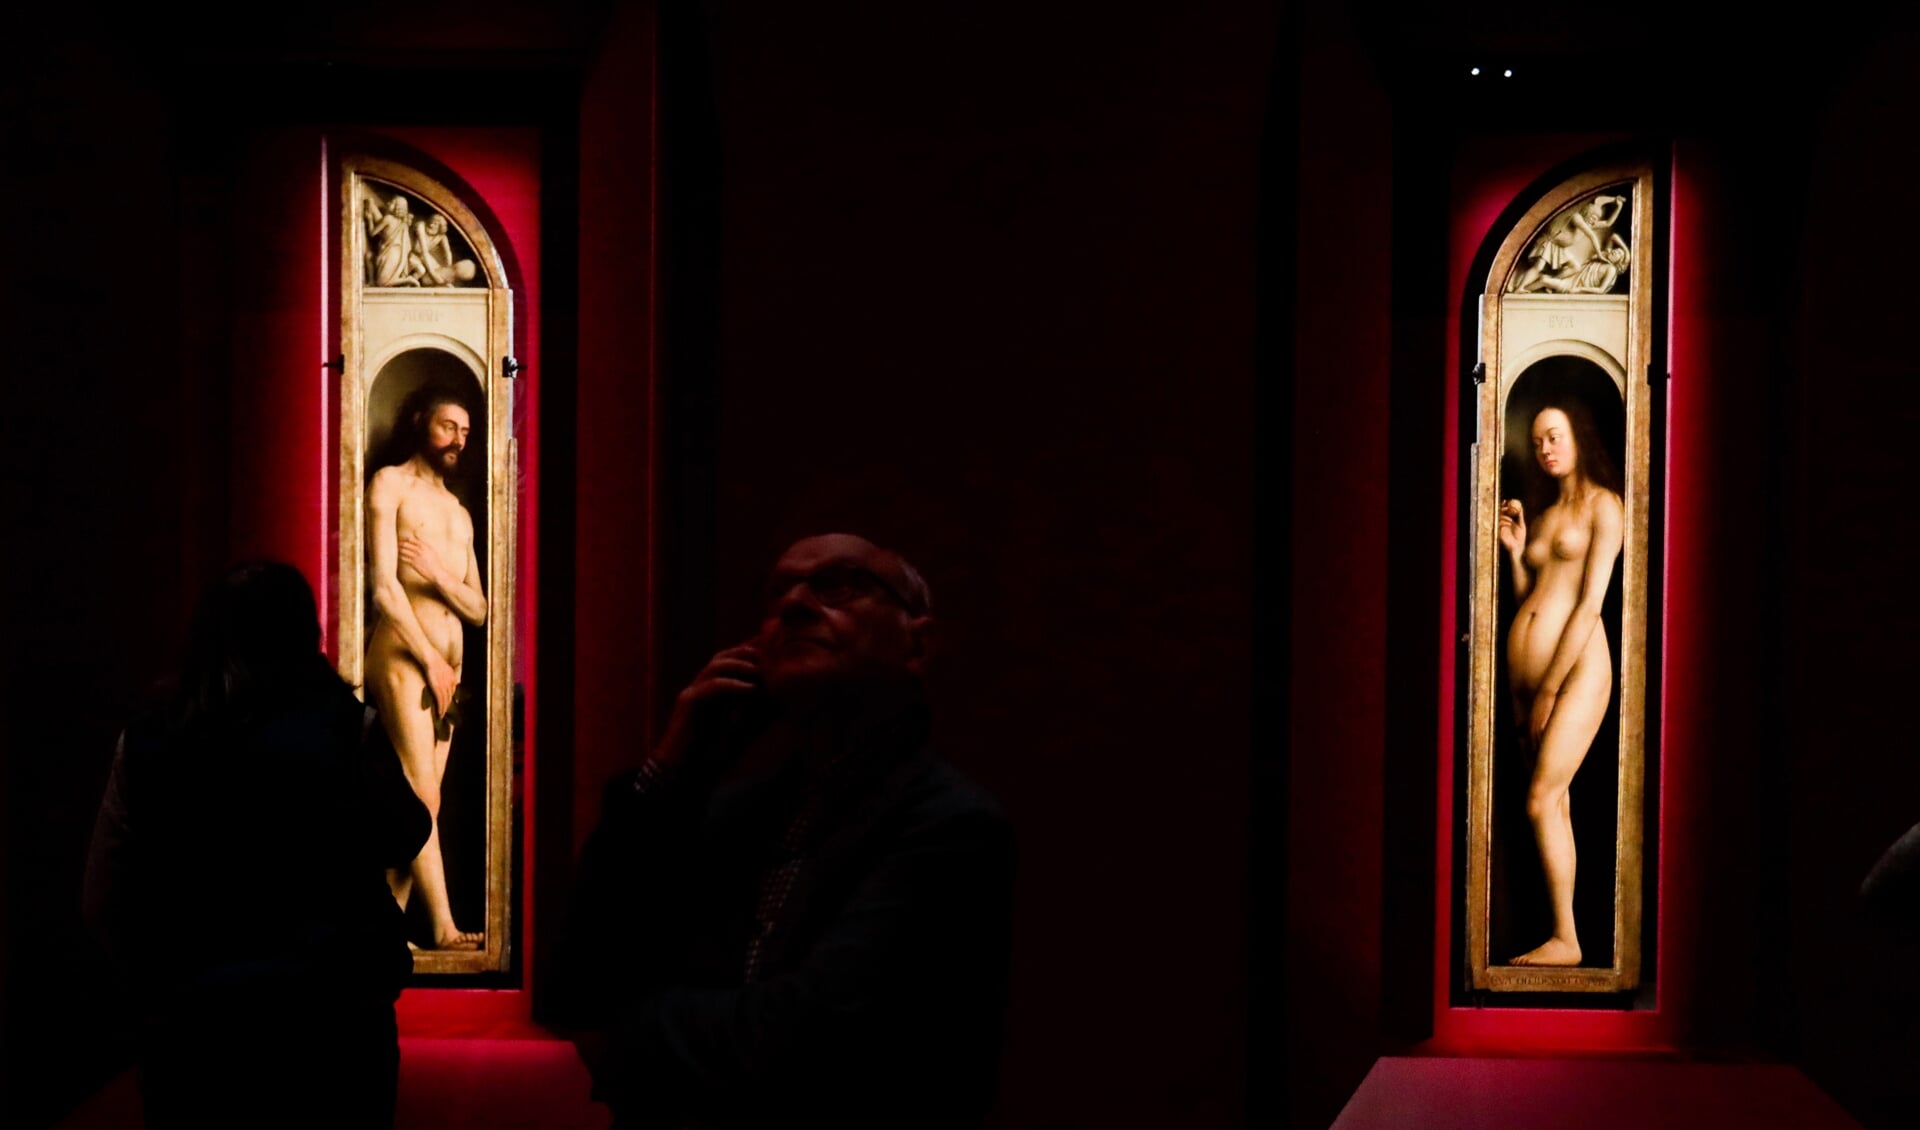 Bezoekers van de tentoonstelling Van Eyck kijken naar de panelen Adam en Eva. Hamvraag: zijn de vijgenblaadjes origineel, of preutse toevoegingen?